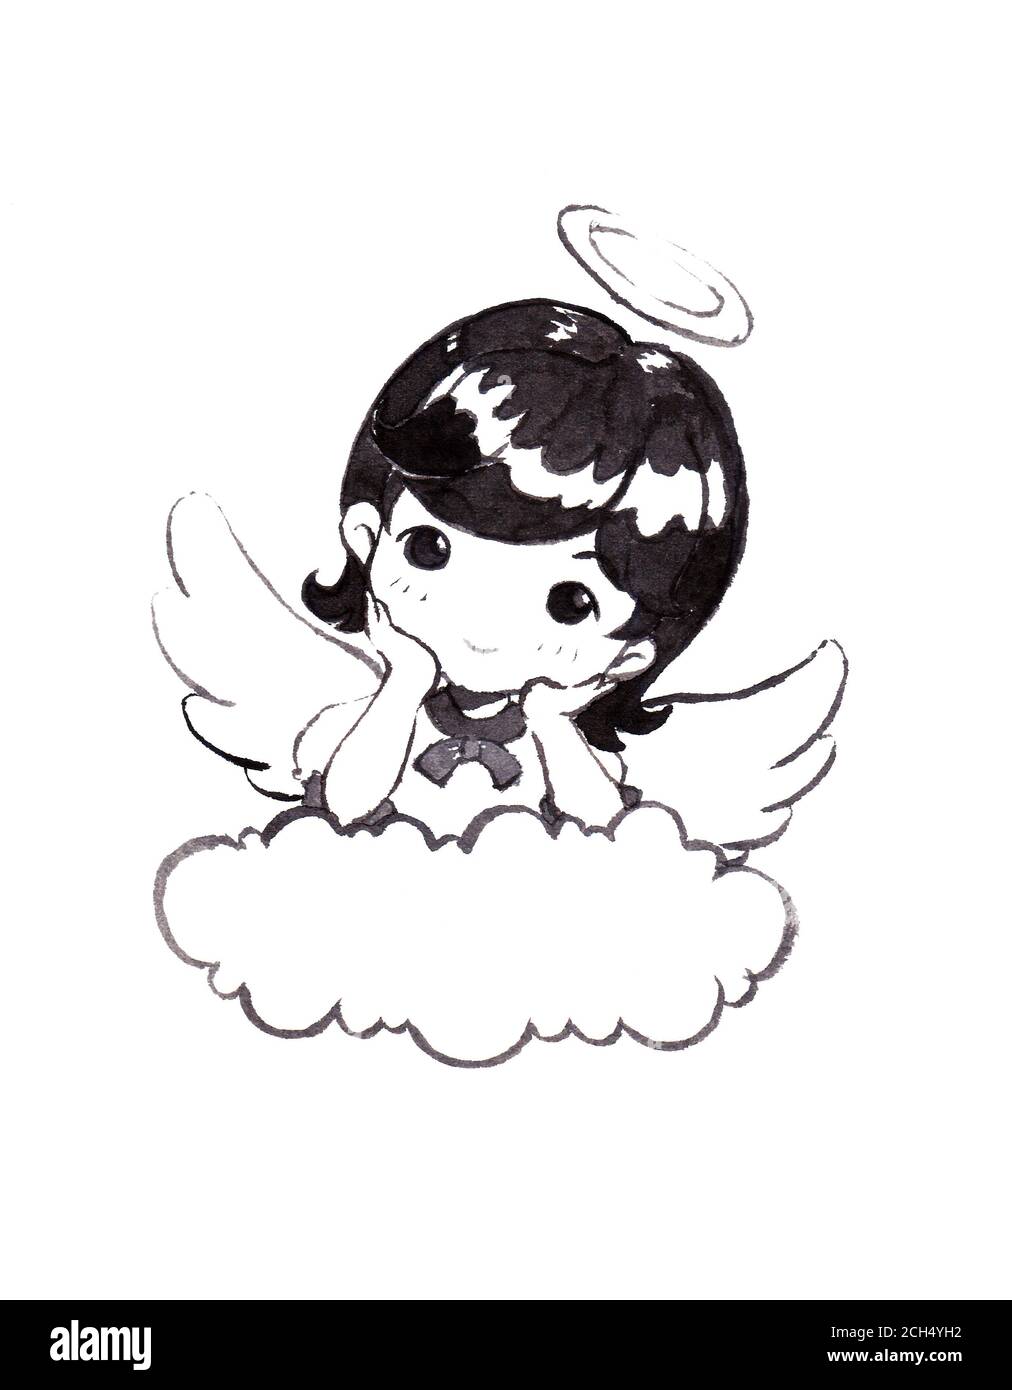 Une jolie ange fille aux cheveux noirs a posé son coude sur le nuage. Peint à la main Illustration sur fond blanc. Banque D'Images